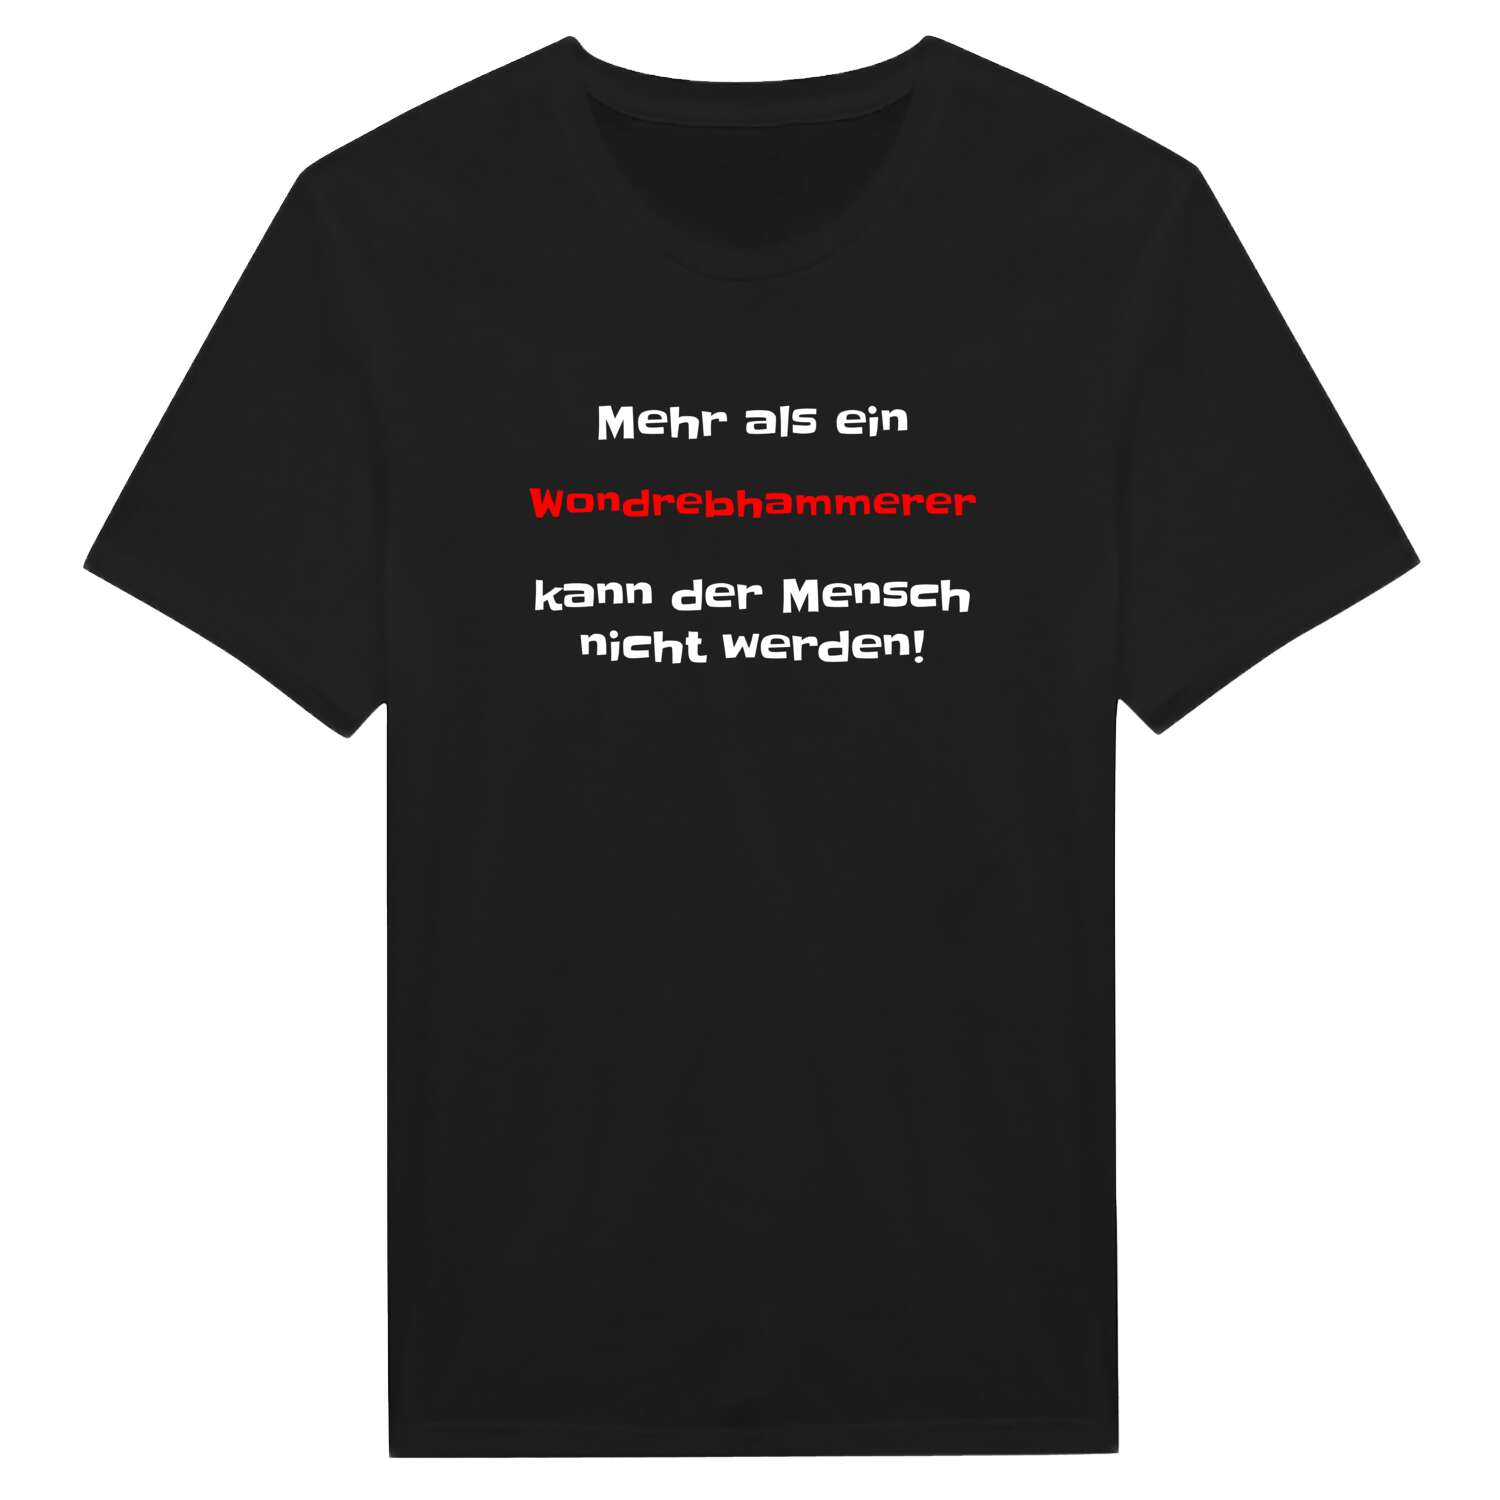 Wondrebhammer T-Shirt »Mehr als ein«